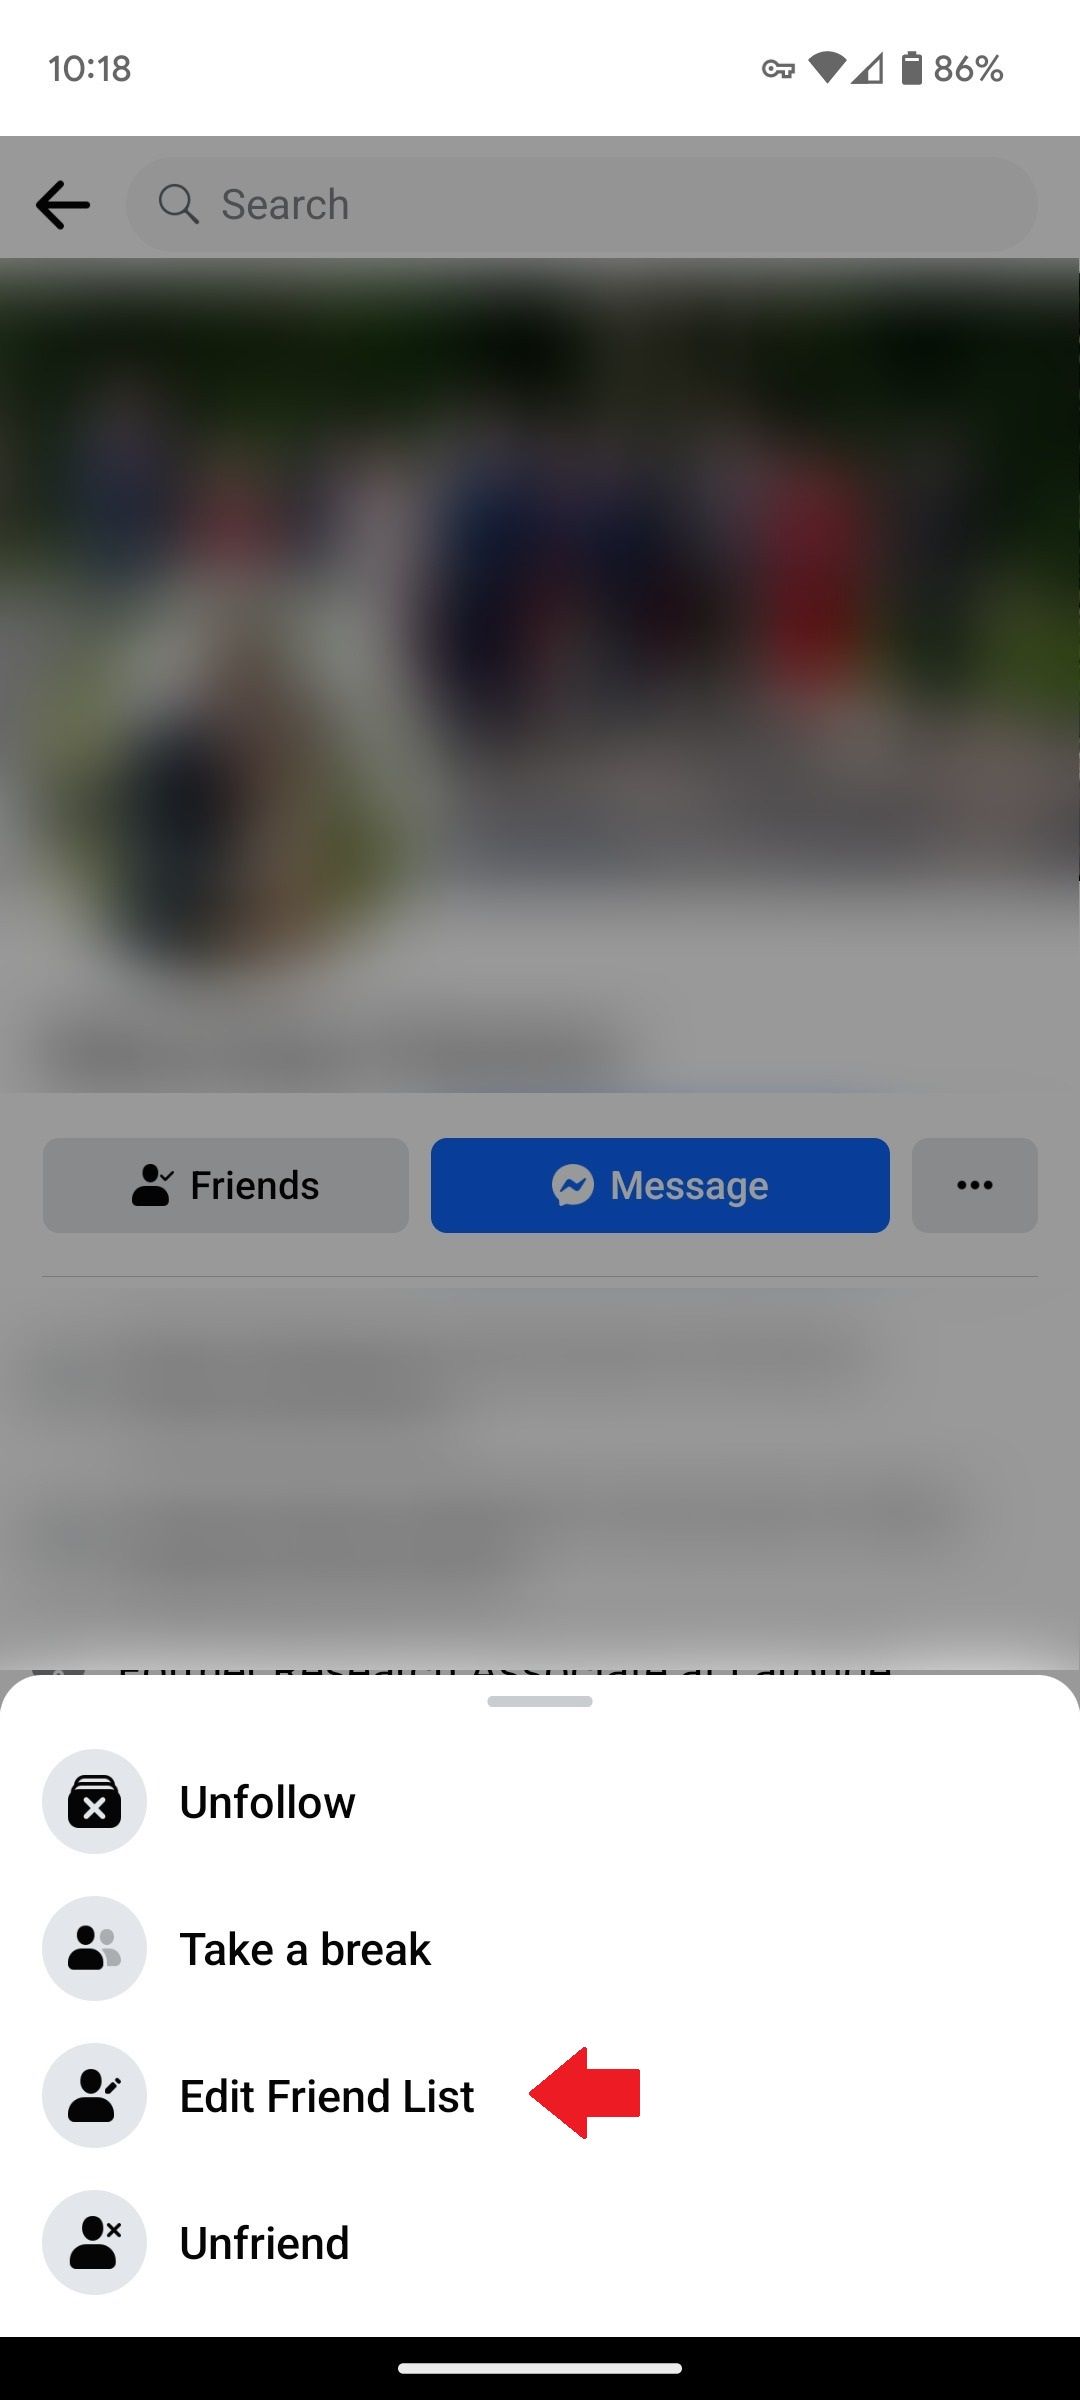 O menu Amigos no aplicativo móvel do Facebook com uma seta vermelha apontando para a opção Editar lista de amigos.